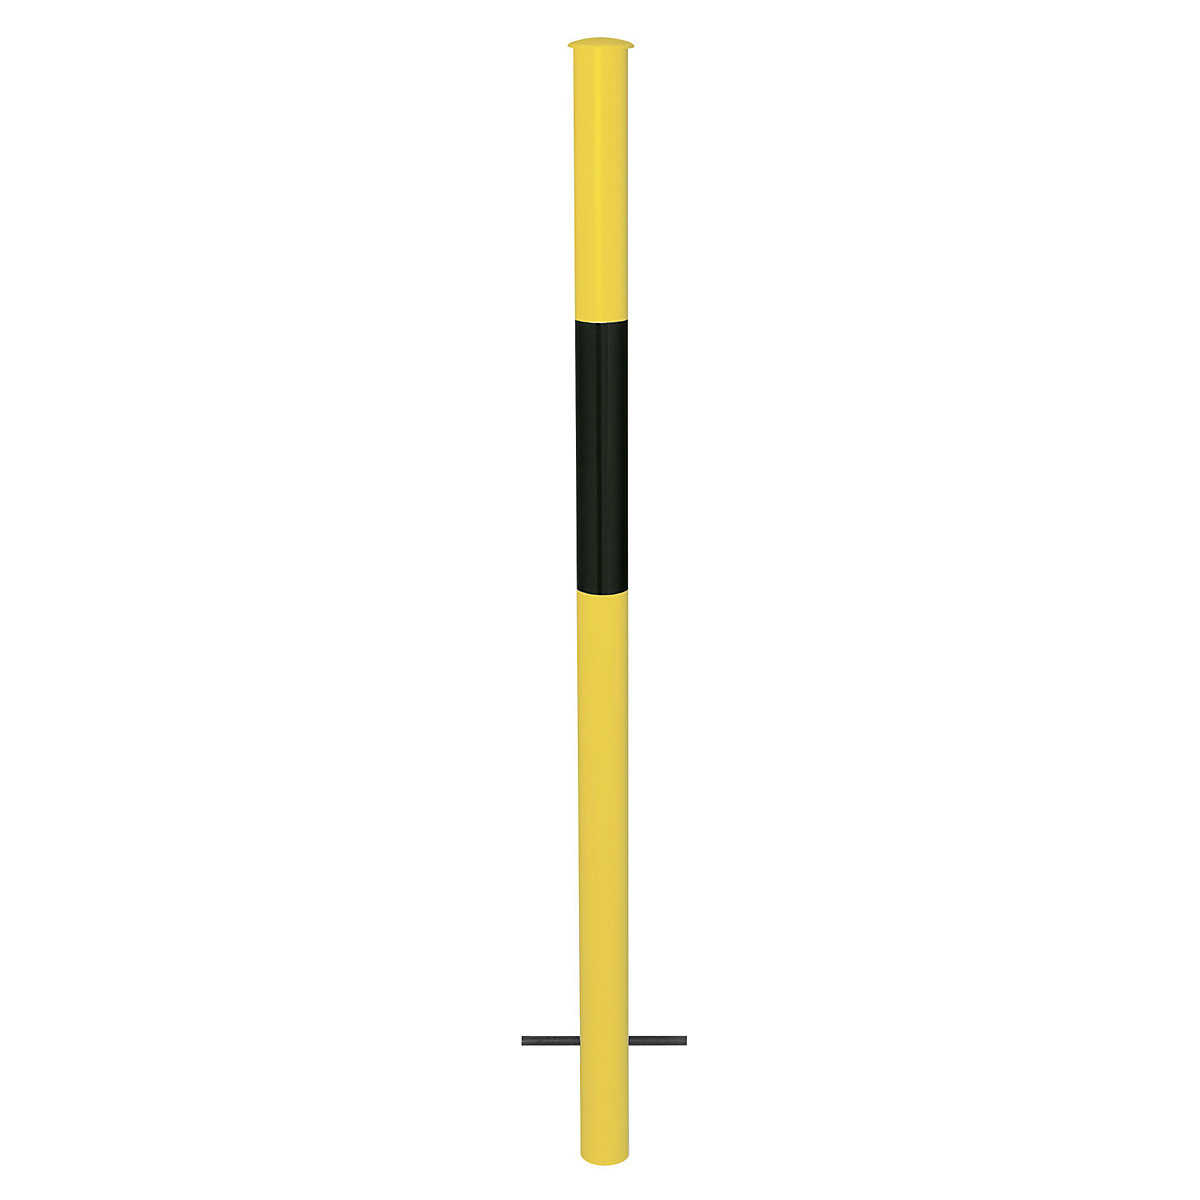 Barrière modulaire, montant à sceller, coloris jaune / noir